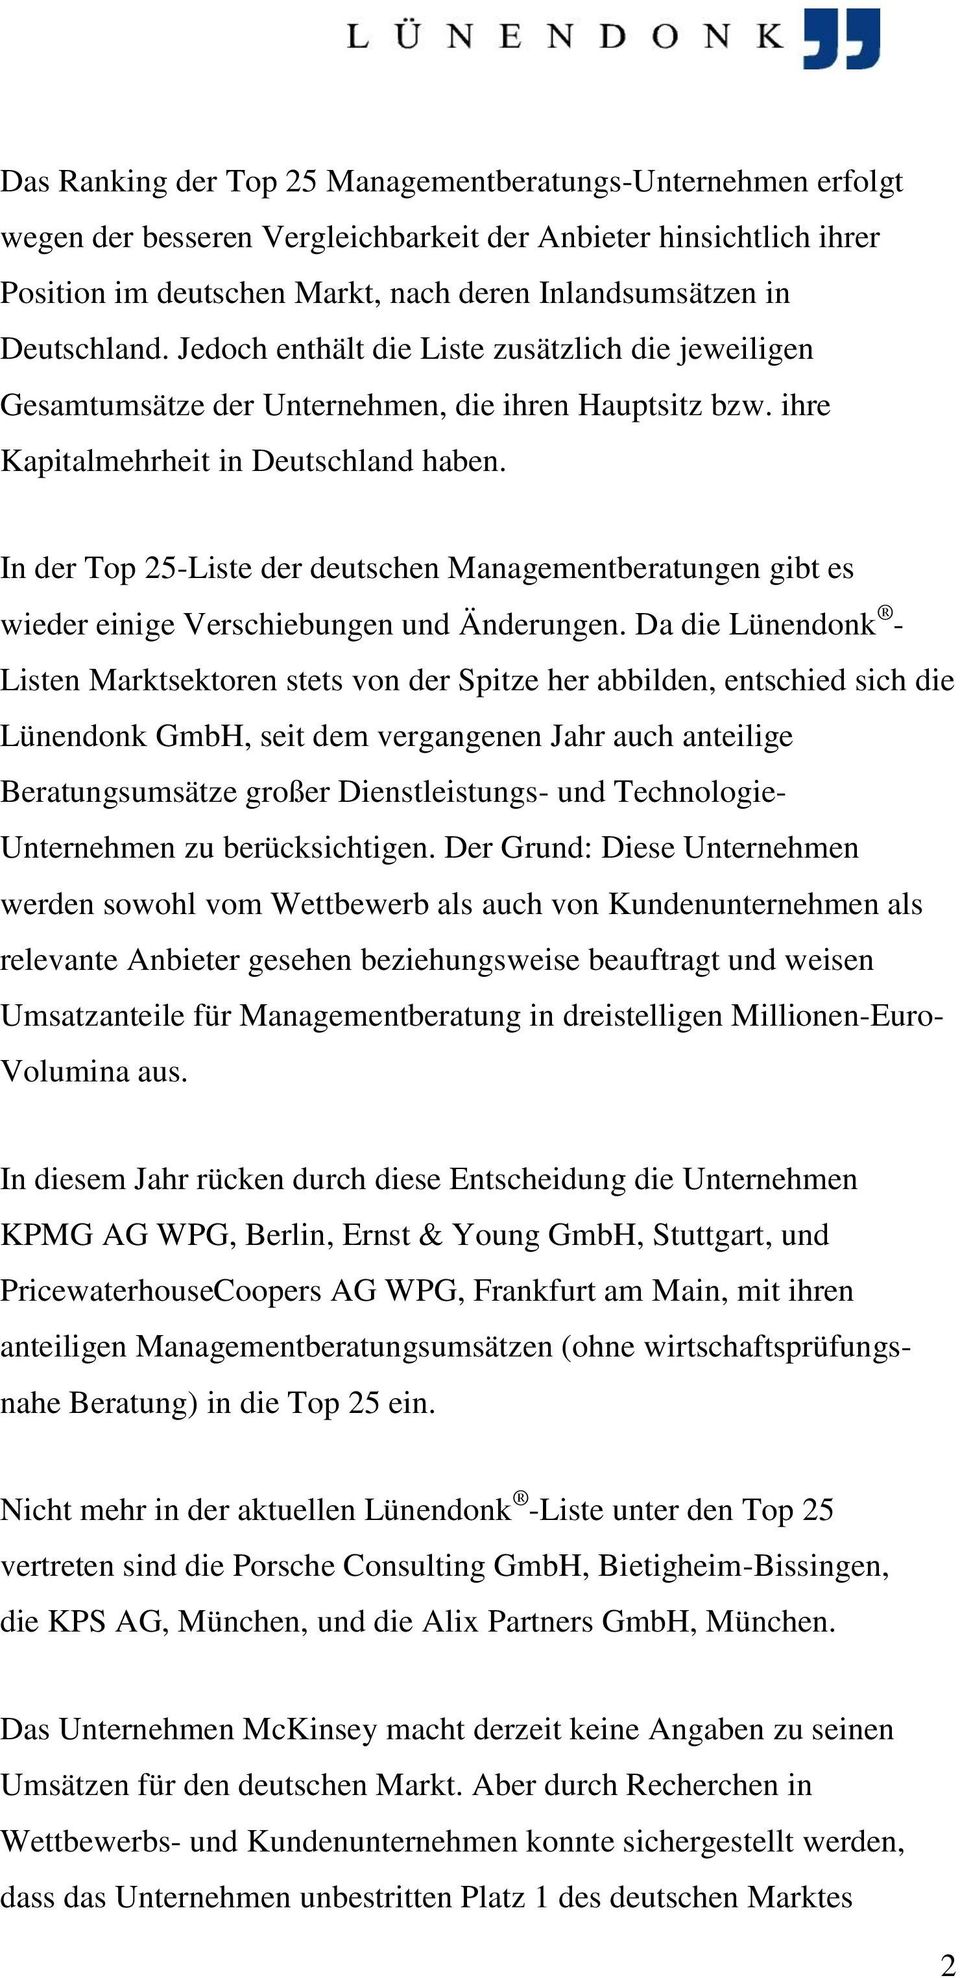 In der Top 25-Liste der deutschen Managementberatungen gibt es wieder einige Verschiebungen und Änderungen.